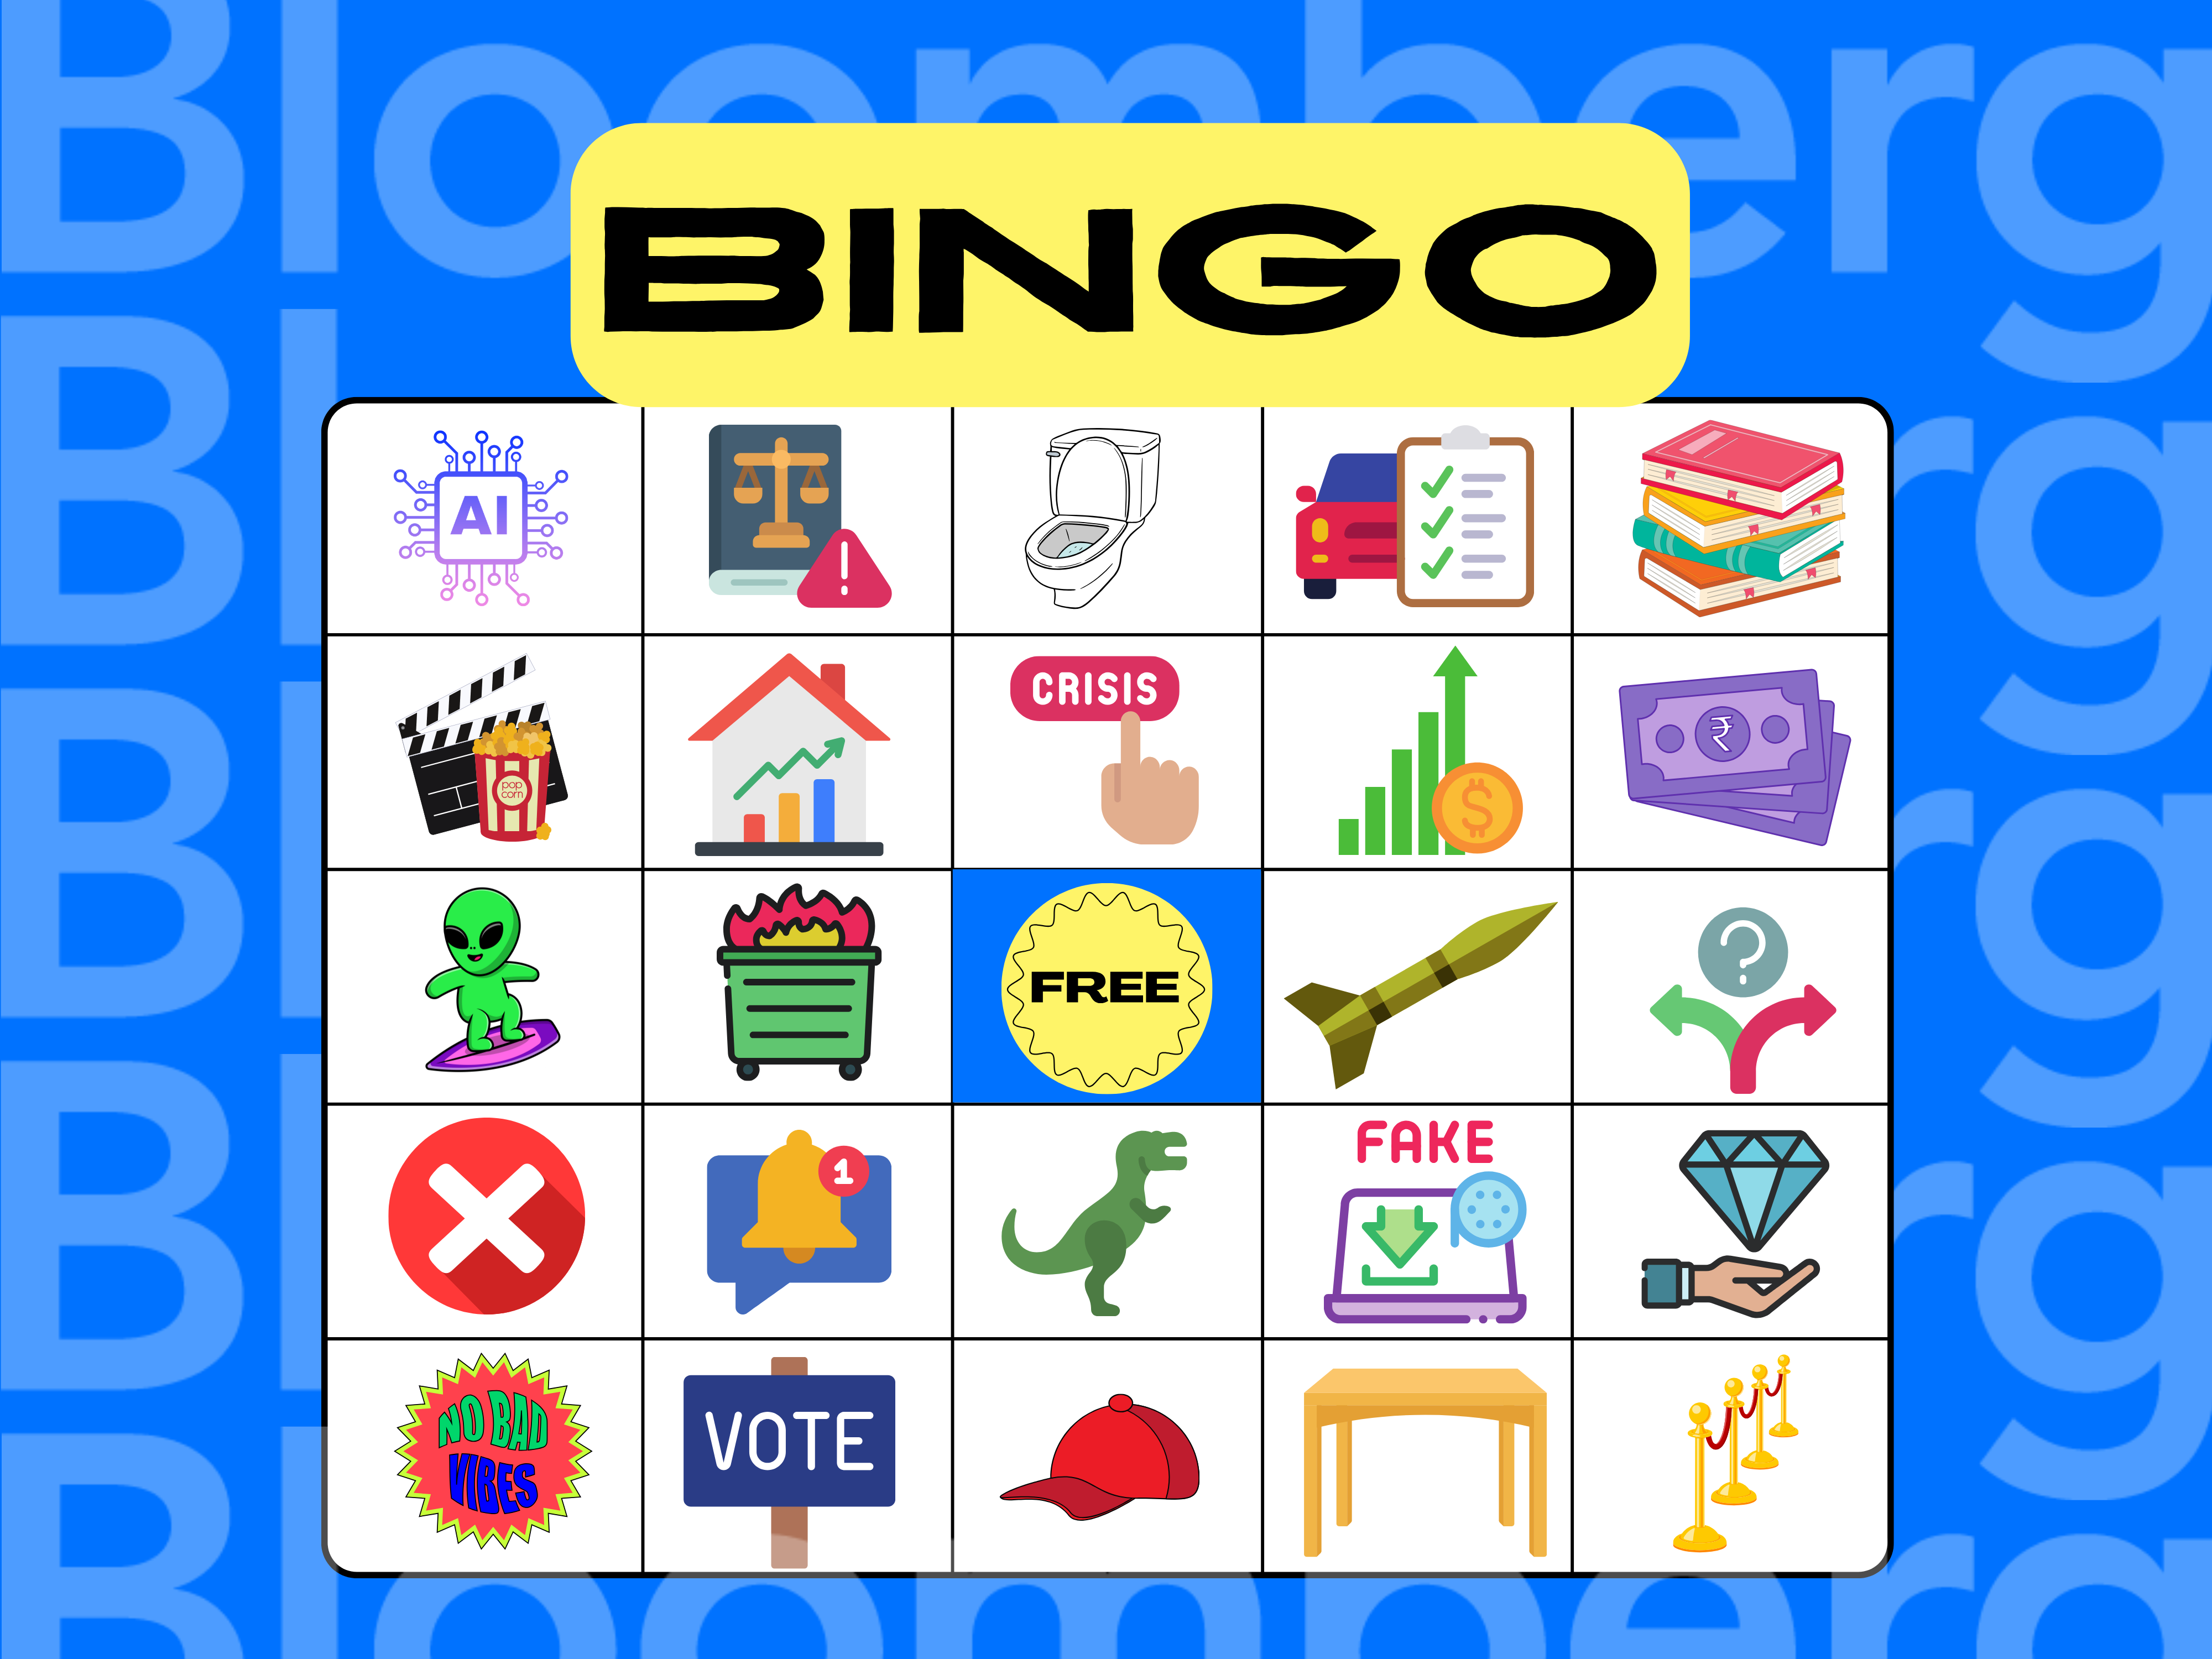 2020 Vision Board Party Bingo Card